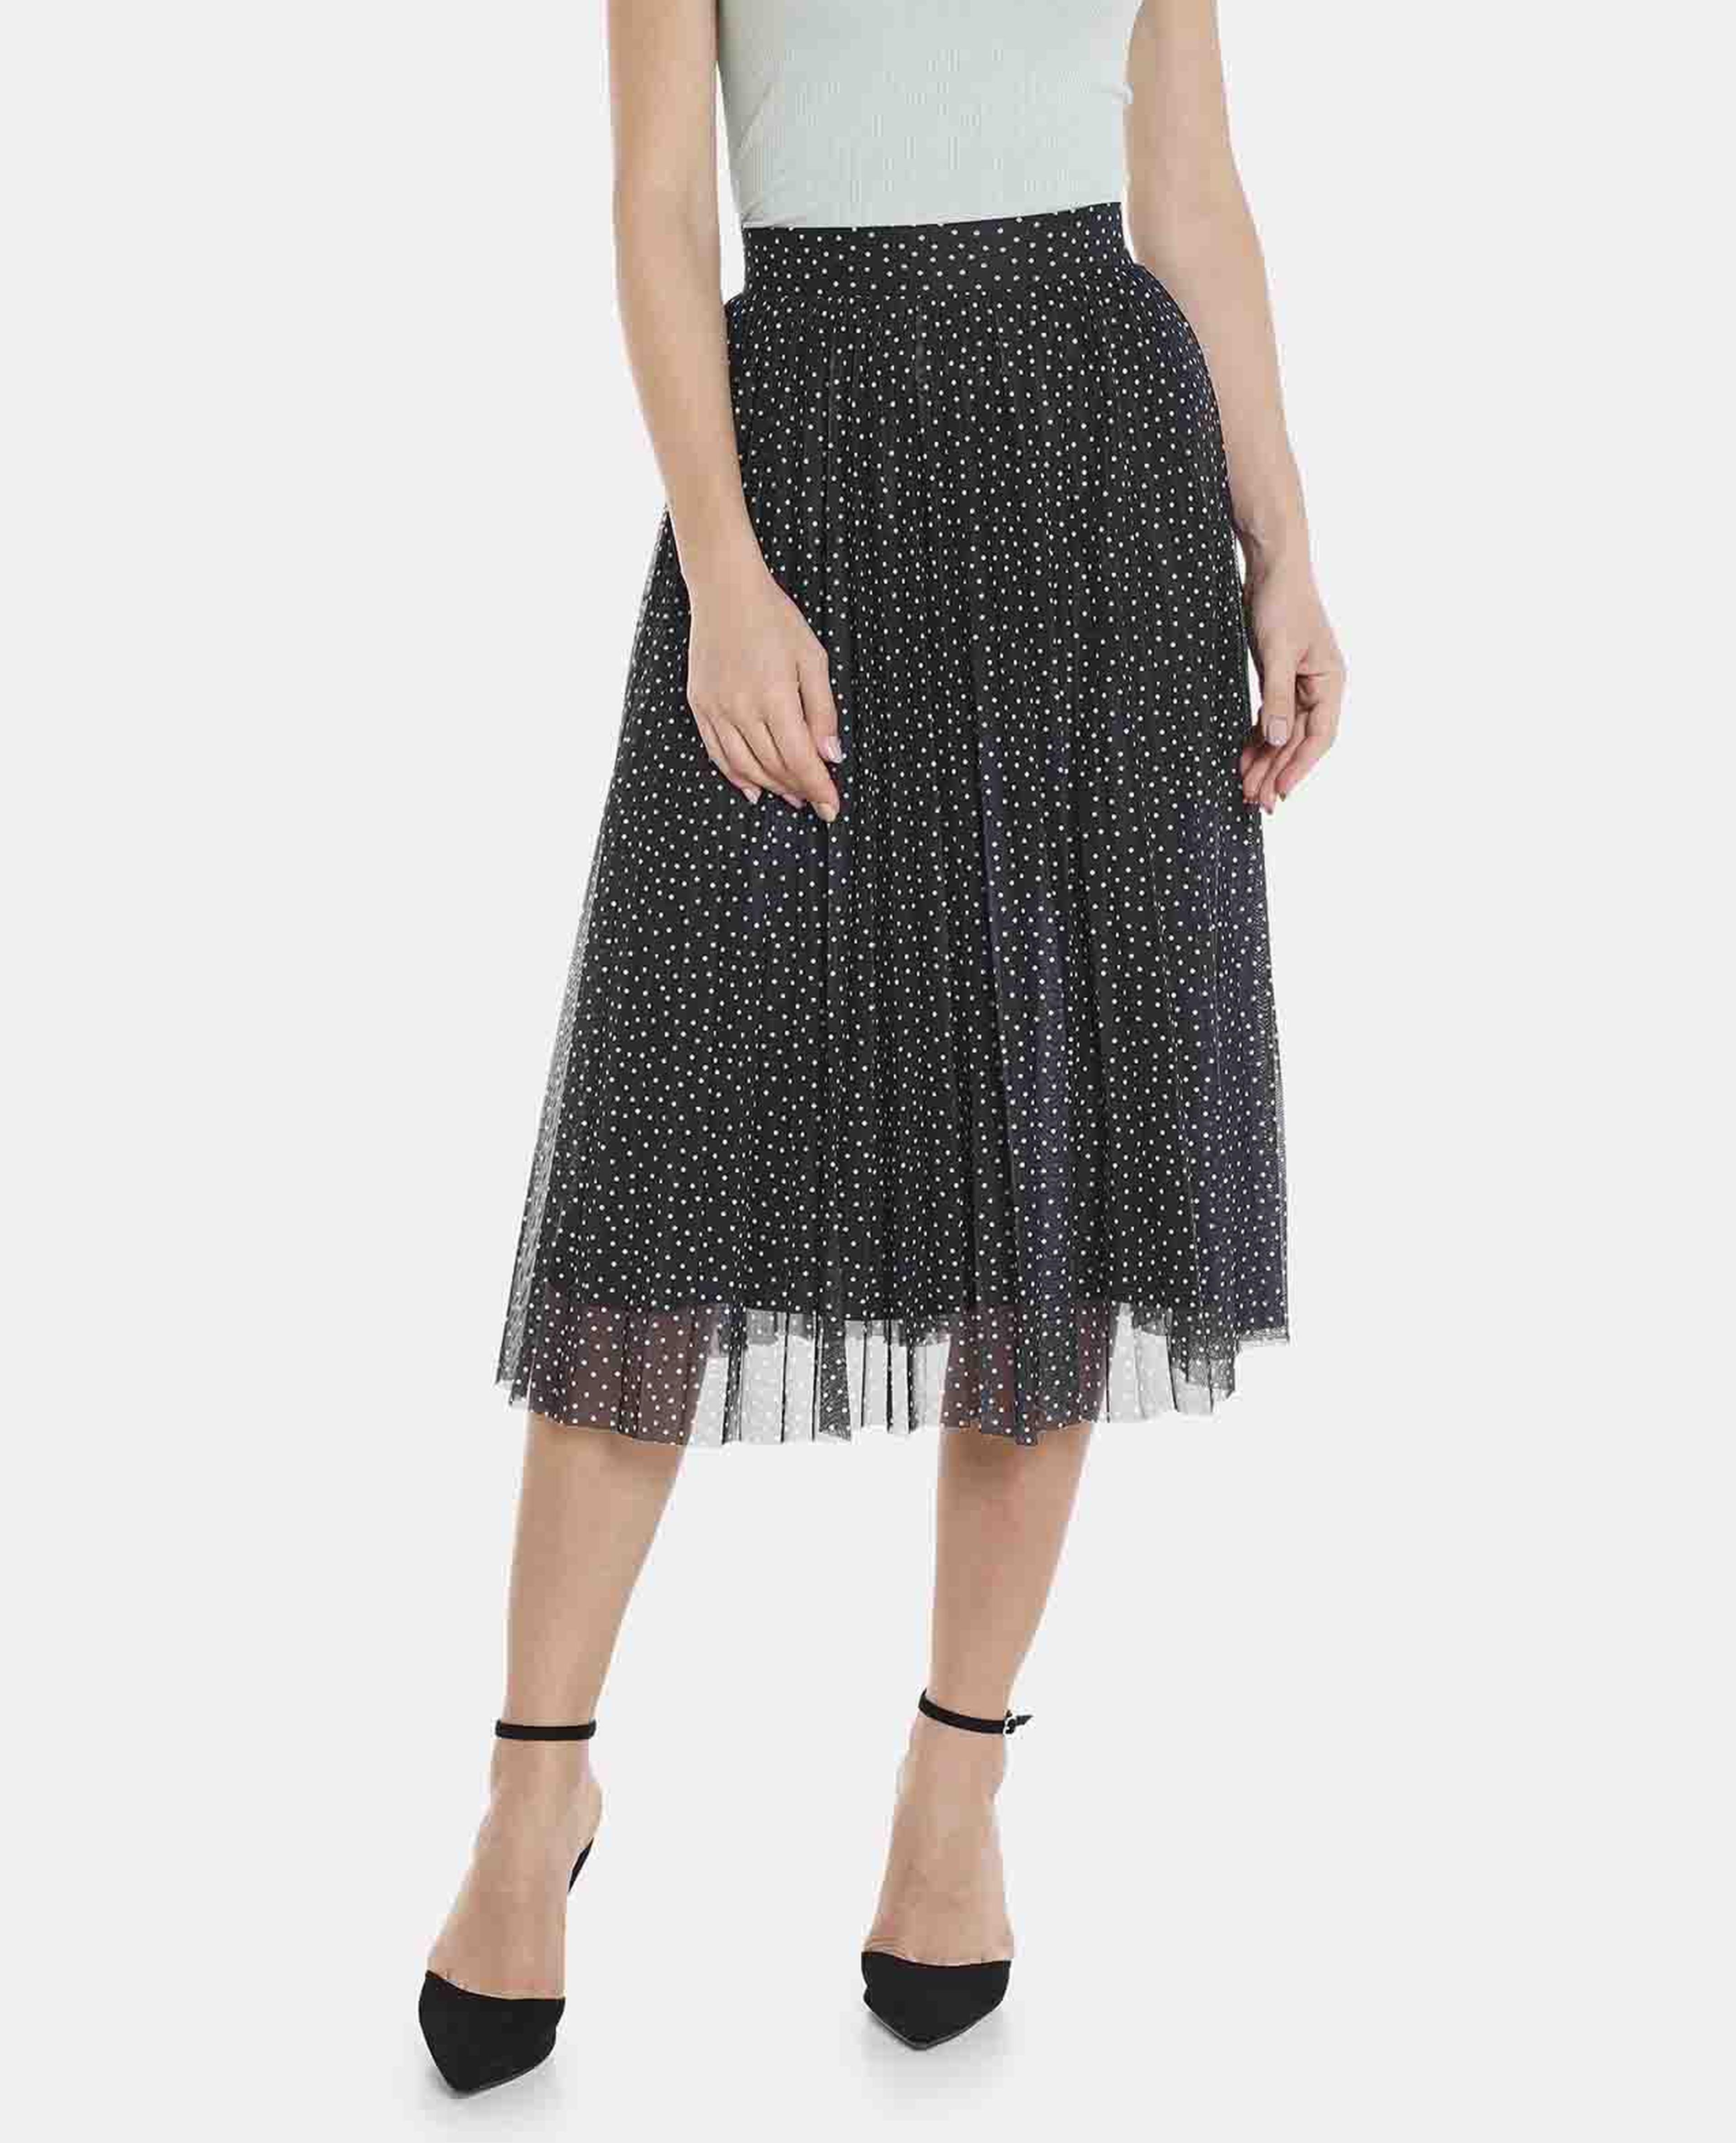 Black Knit Polka Dot Skirt